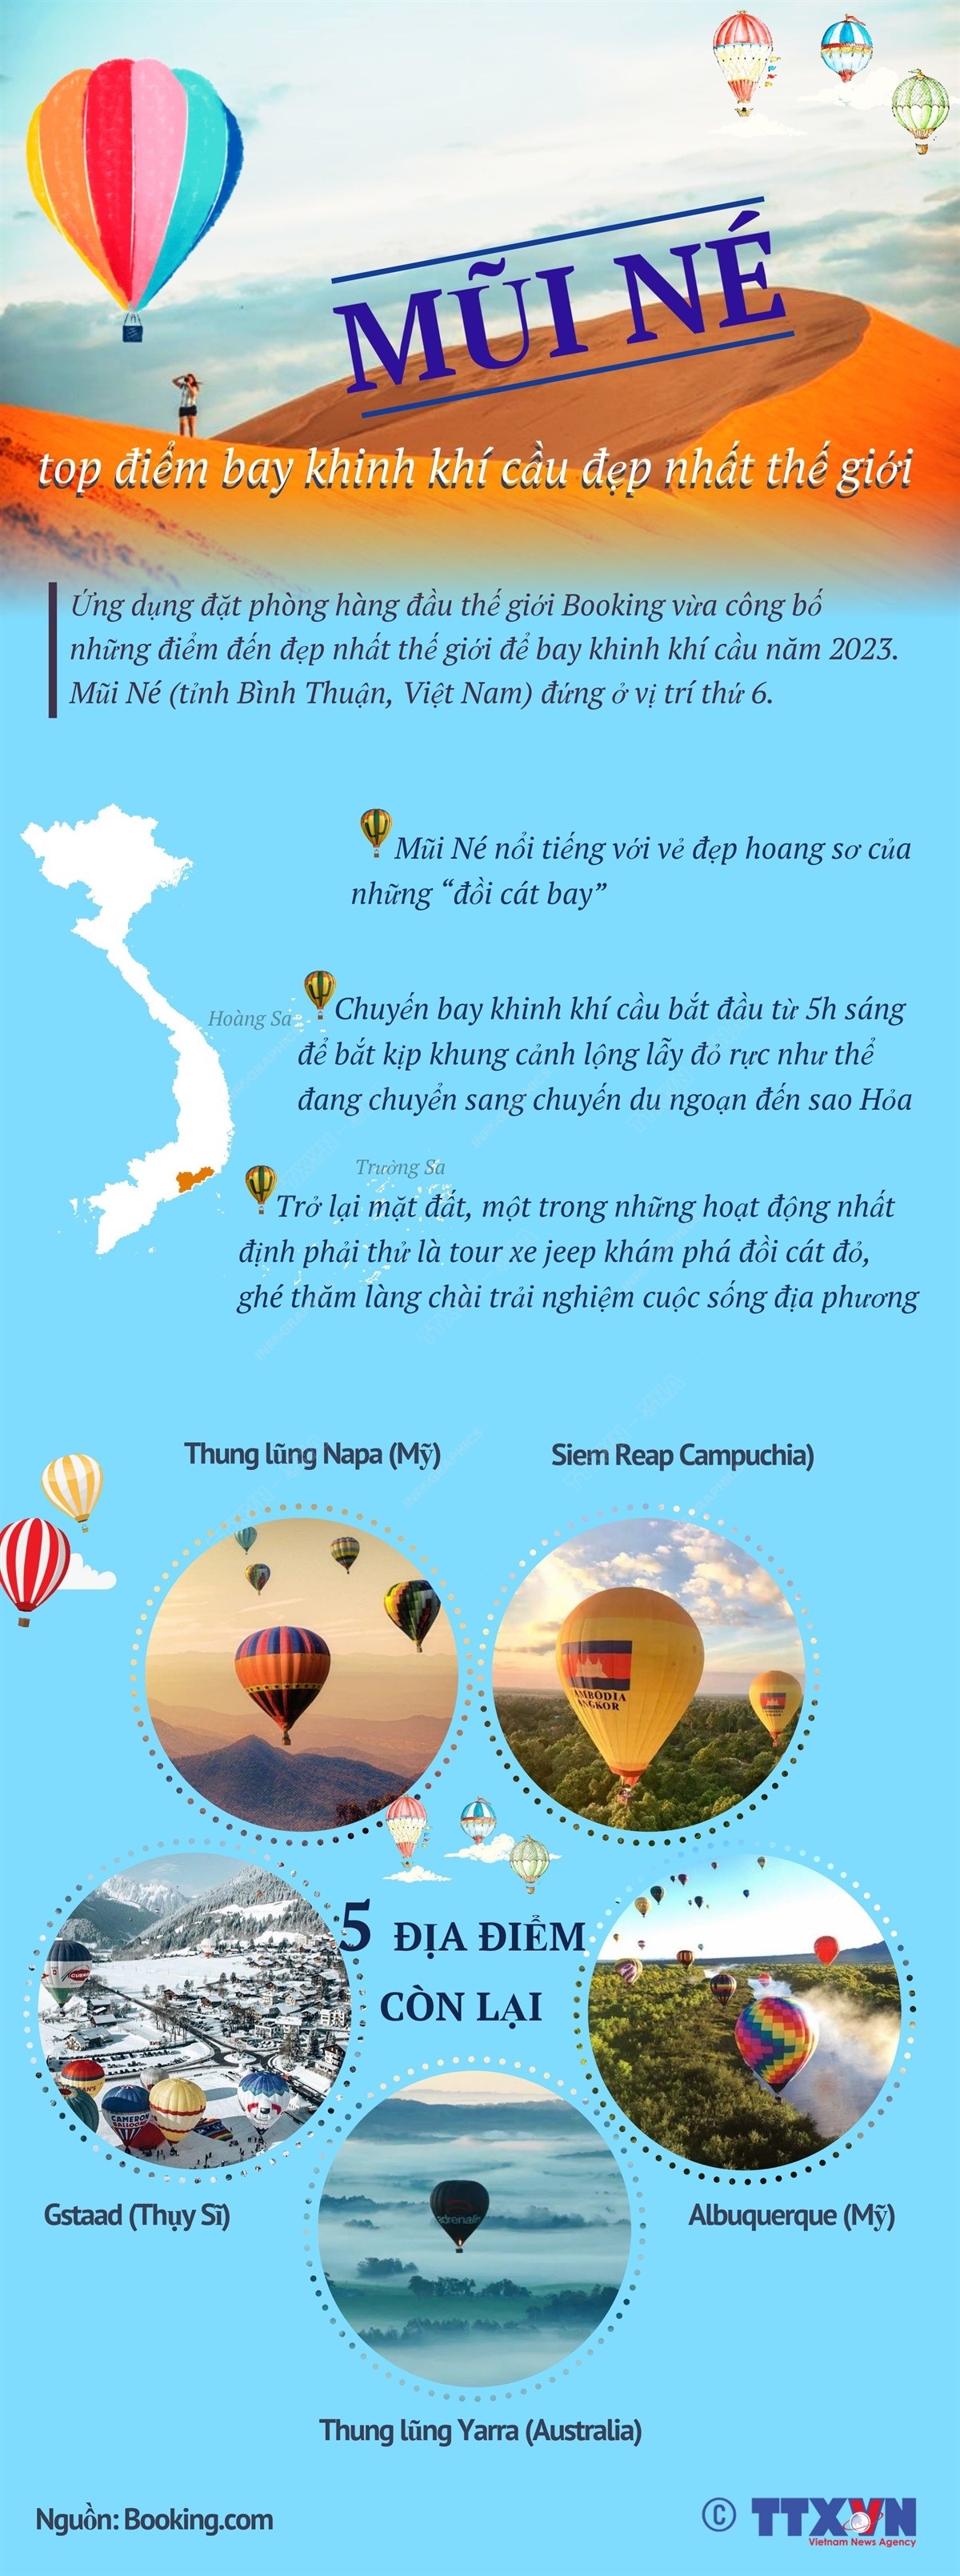 Mũi Né - top điểm bay khinh khí cầu đẹp nhất thế giới